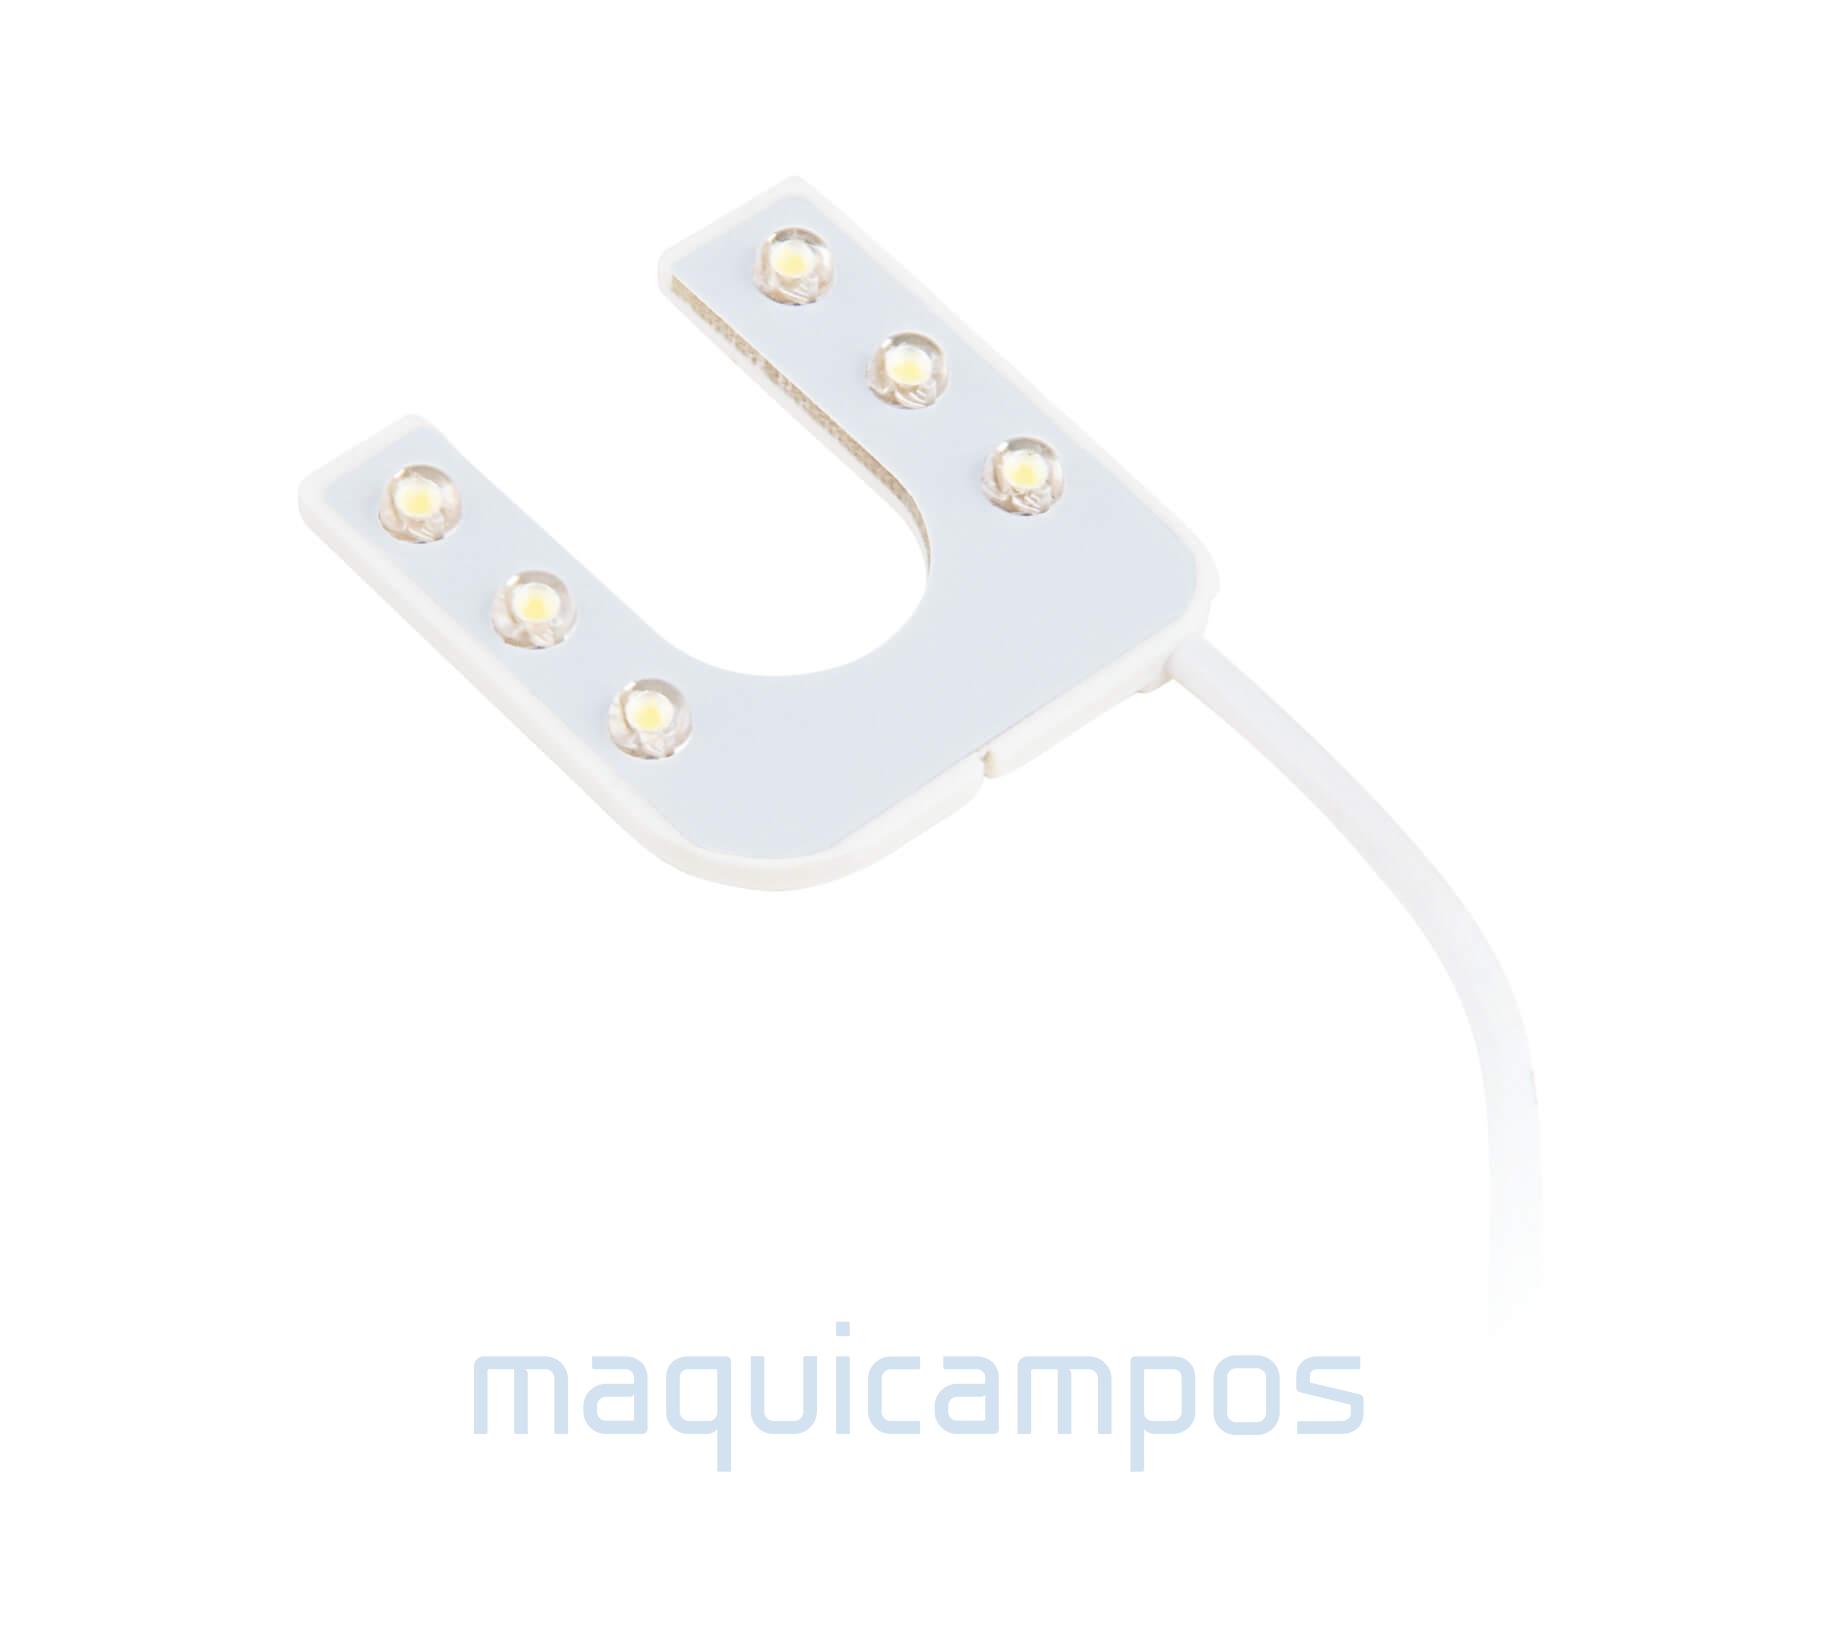 Maquic TD-6U 1W, 5V Luz Blanca